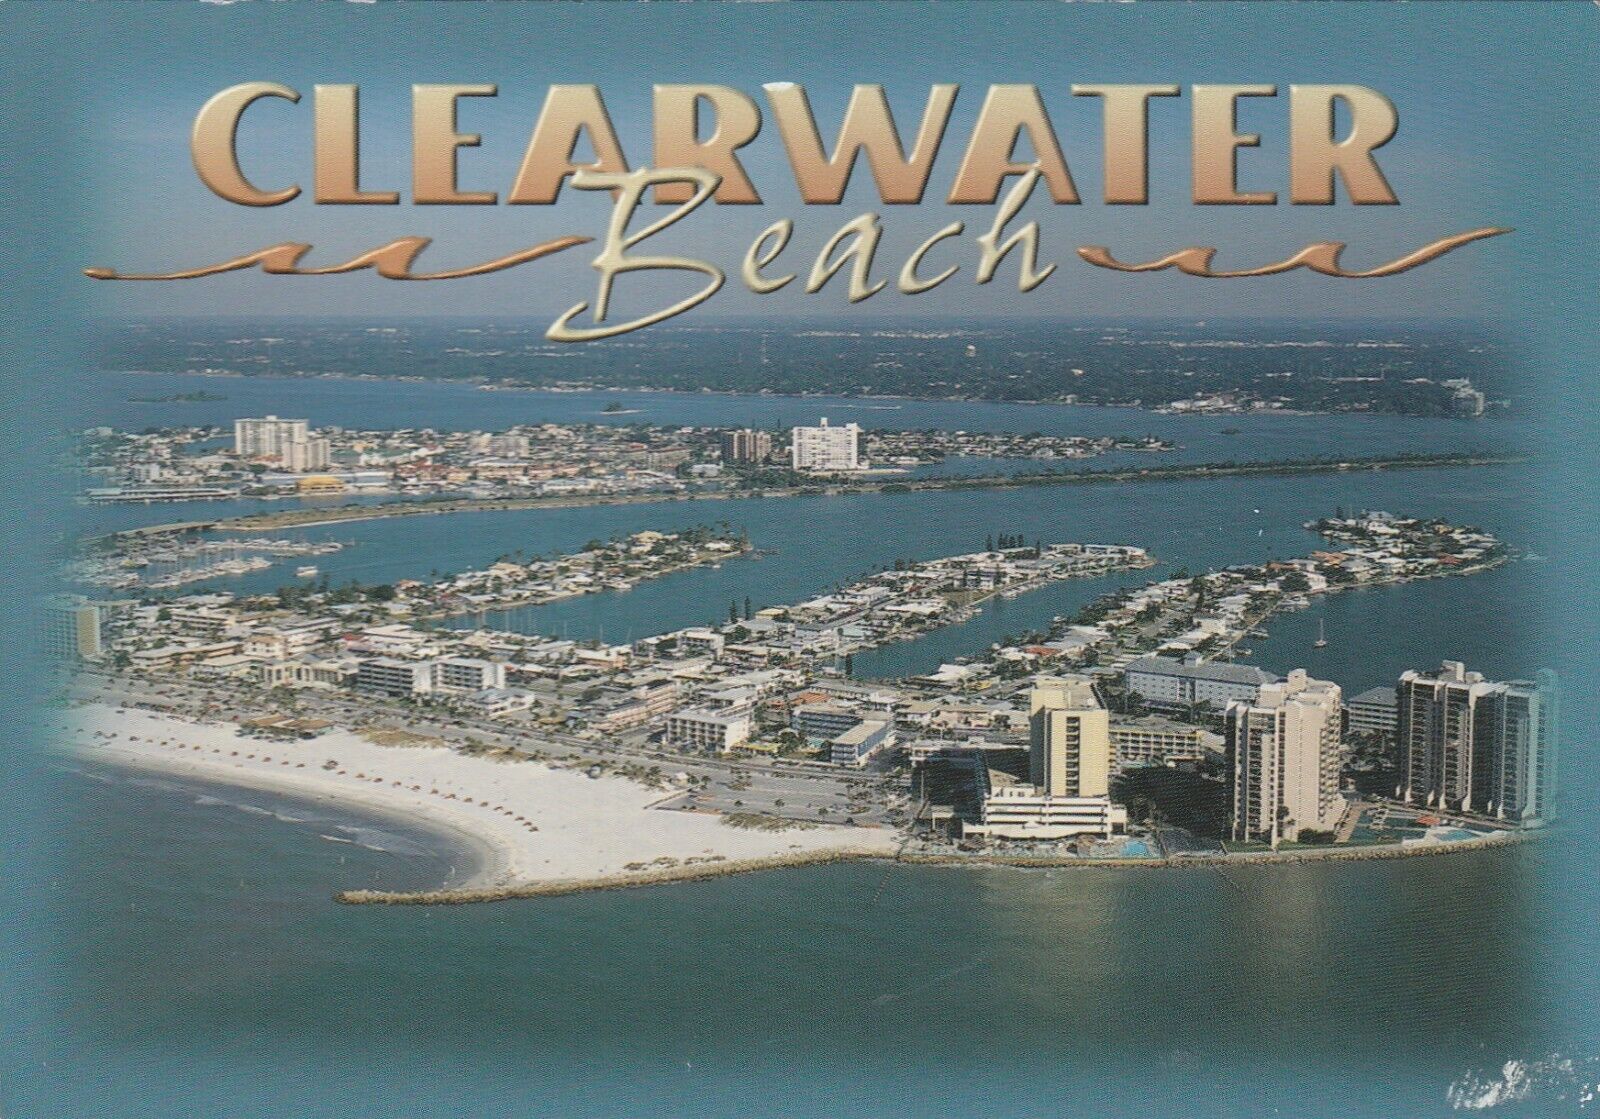 Clearwater Beach Florida, Greetings, Sunbathers Swimmers, Vintage Postcard